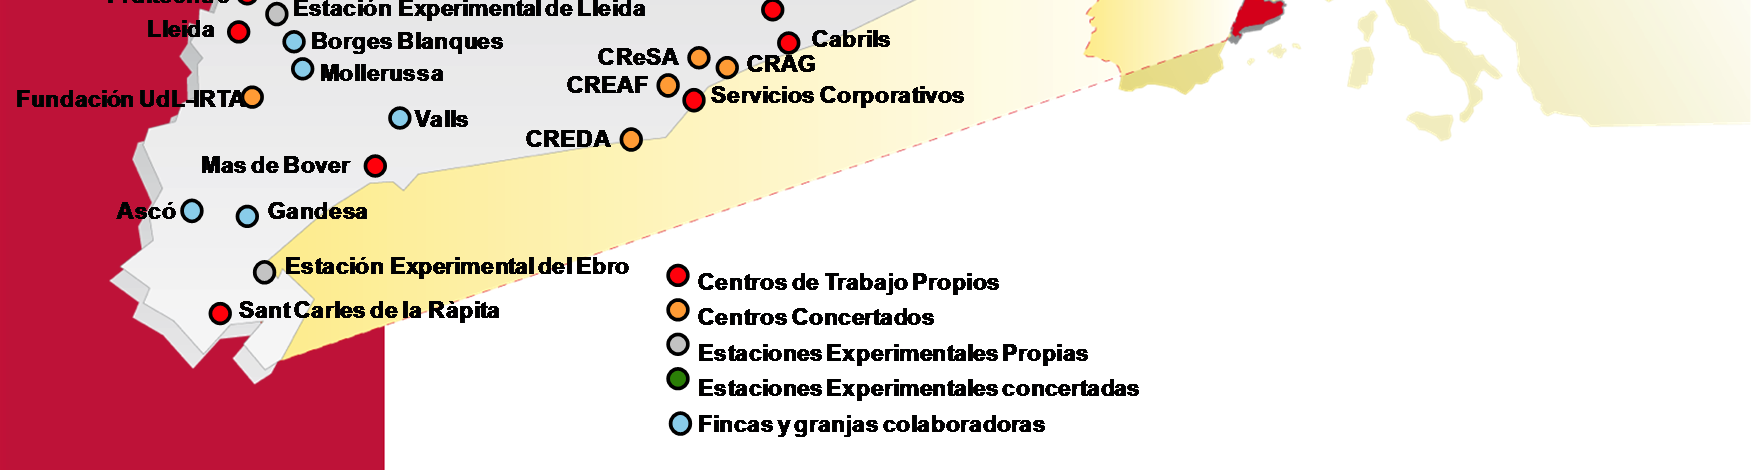 IRTA Institut per la Recerca i Tecnologies Agroalimentàries 10 Centros propios + 9 Centros consorciados forman el Sistema Cooperativo de Investigación.